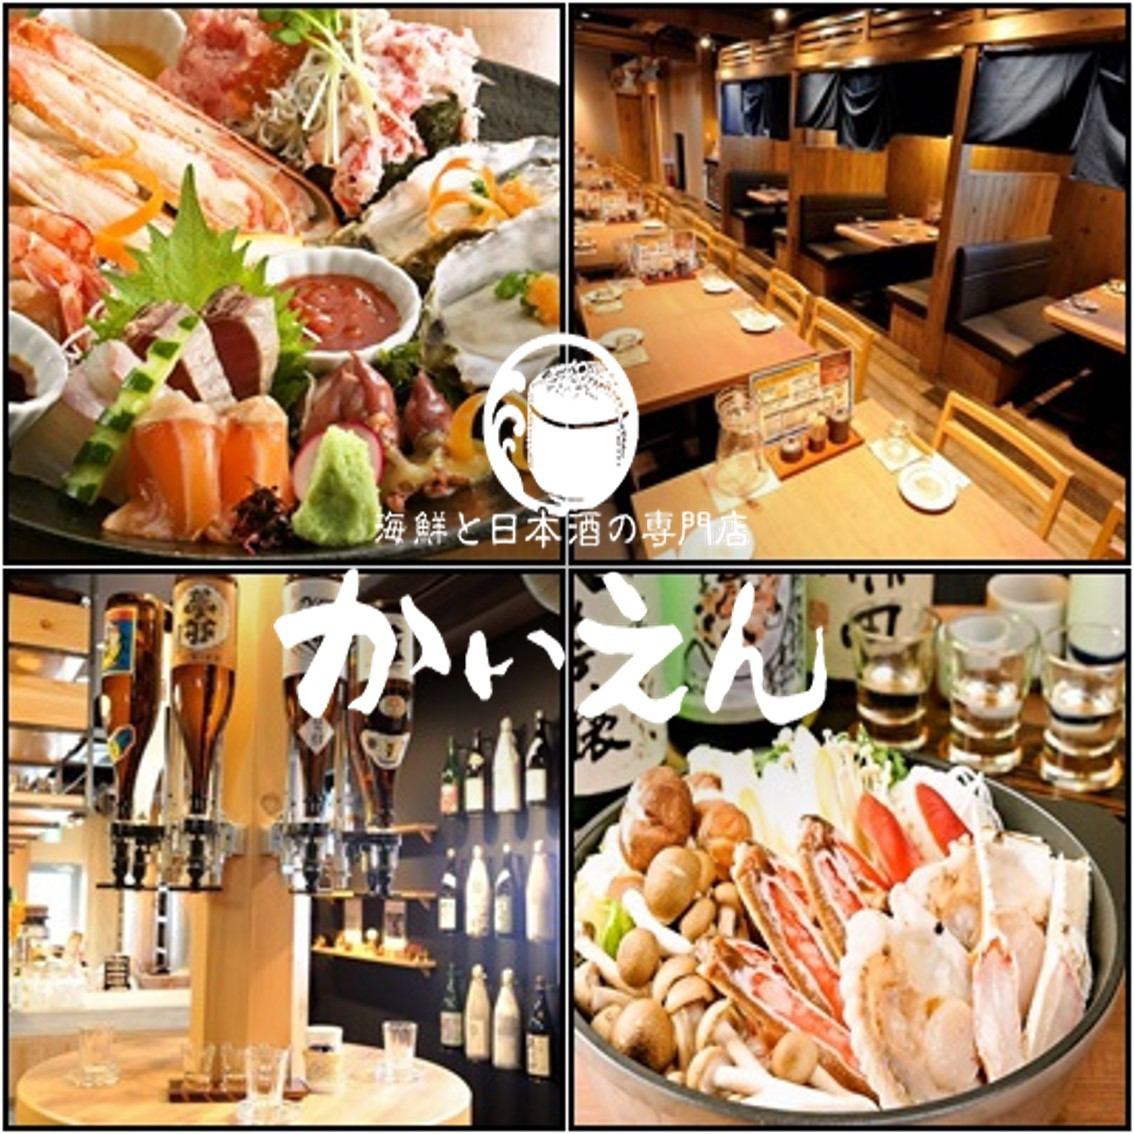 新鲜的海鲜和自助饮料是愉快的，用日本酒酿造的清酒